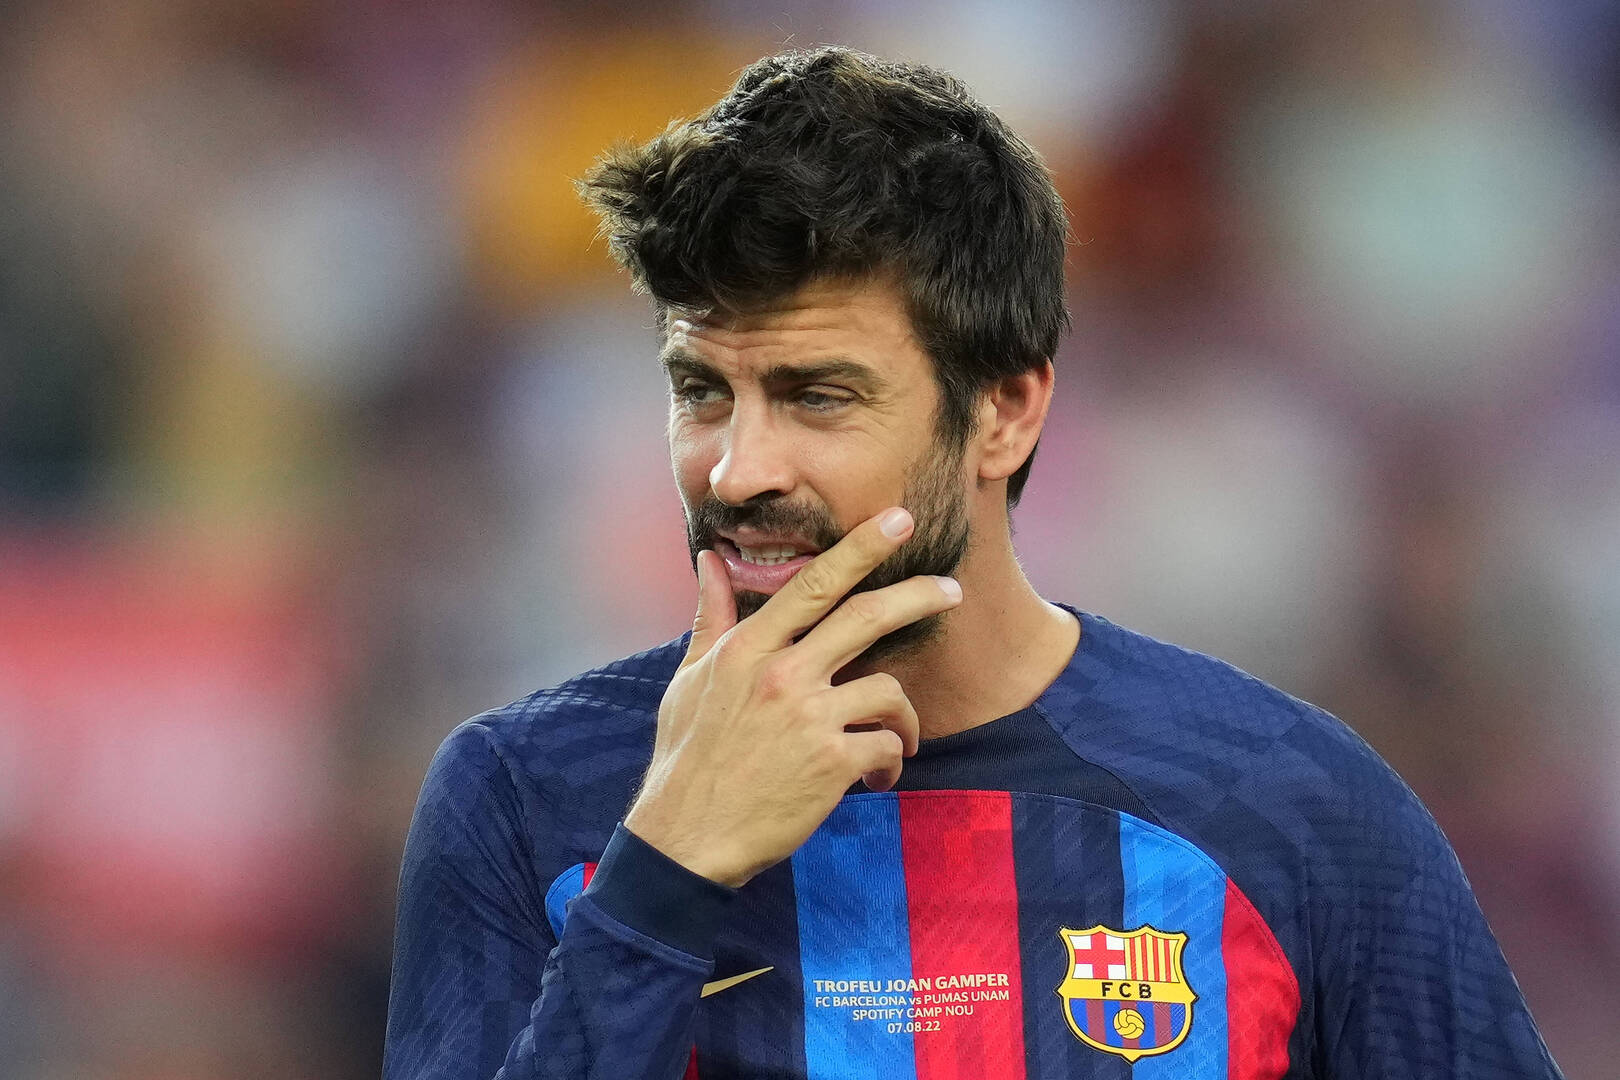 "بيكيه" لاعب برشلونة يعلن اعتزاله رسميا Image